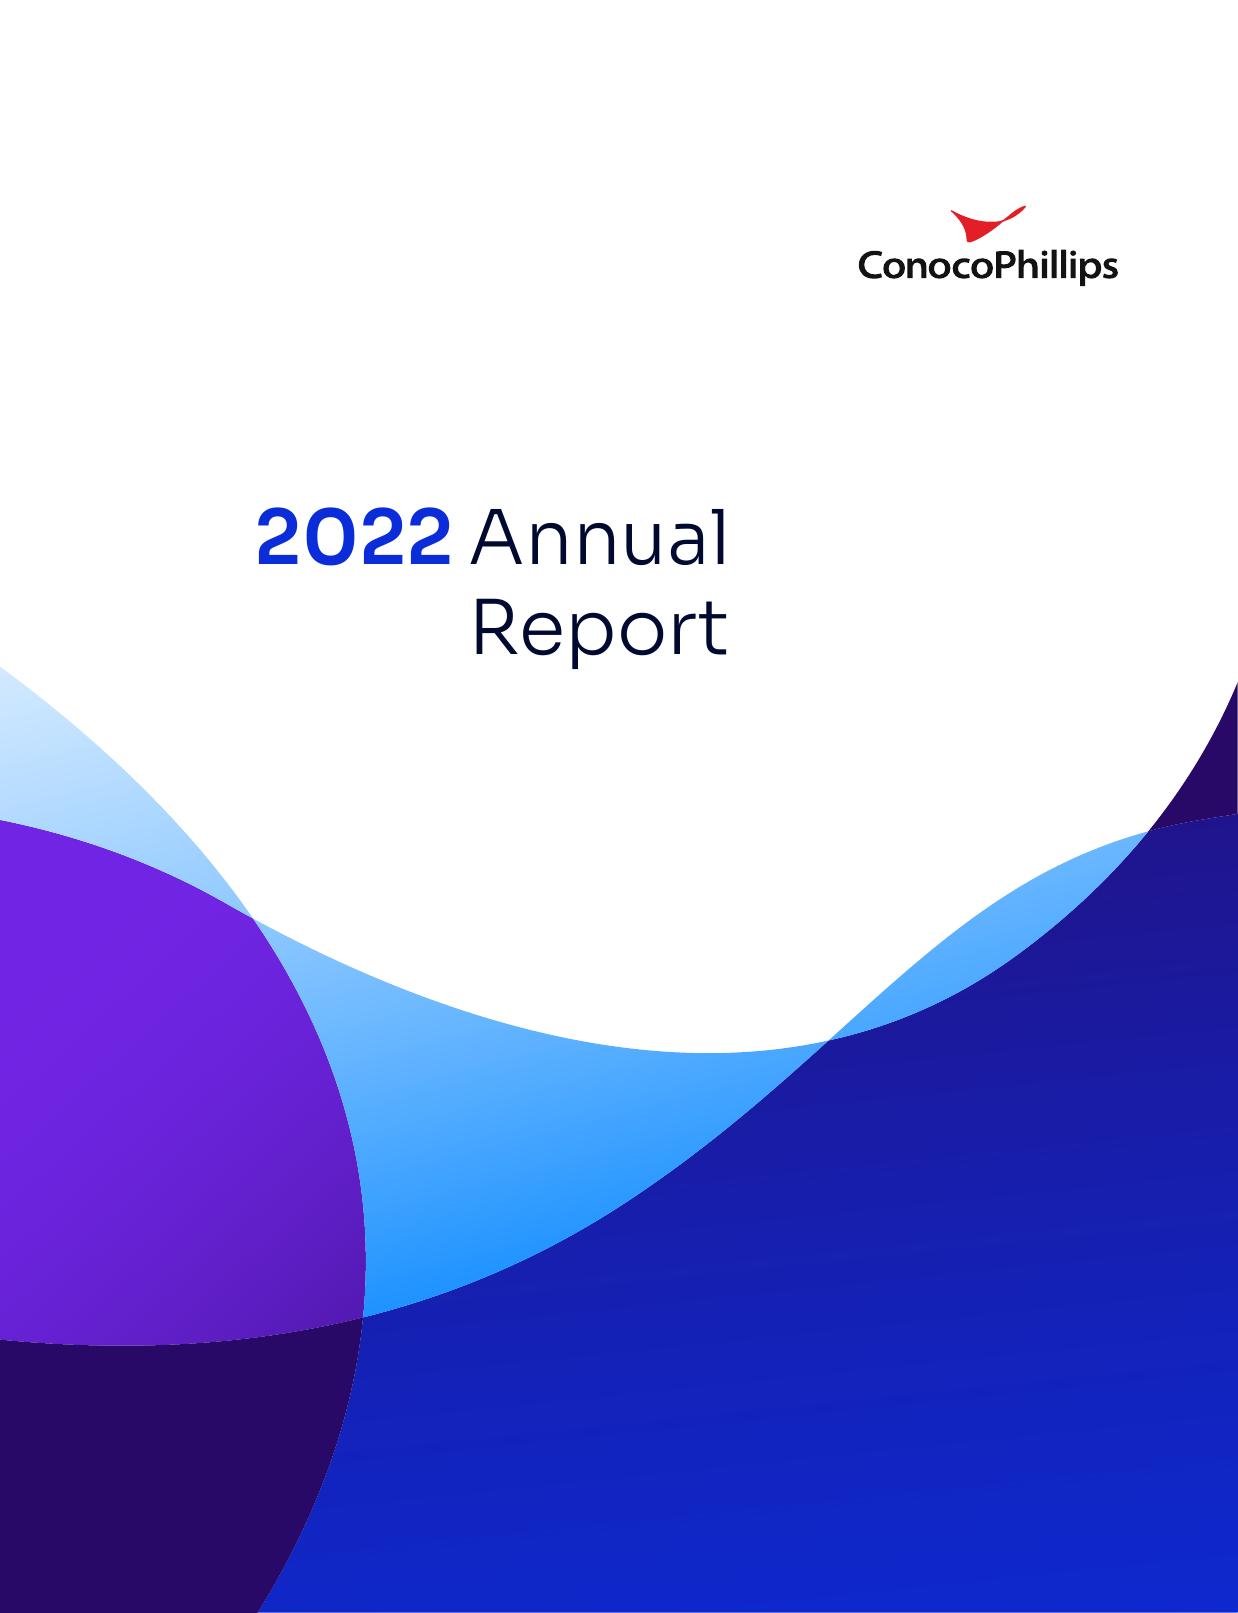 TRAVELANDLEISURECO 2022 Annual Report